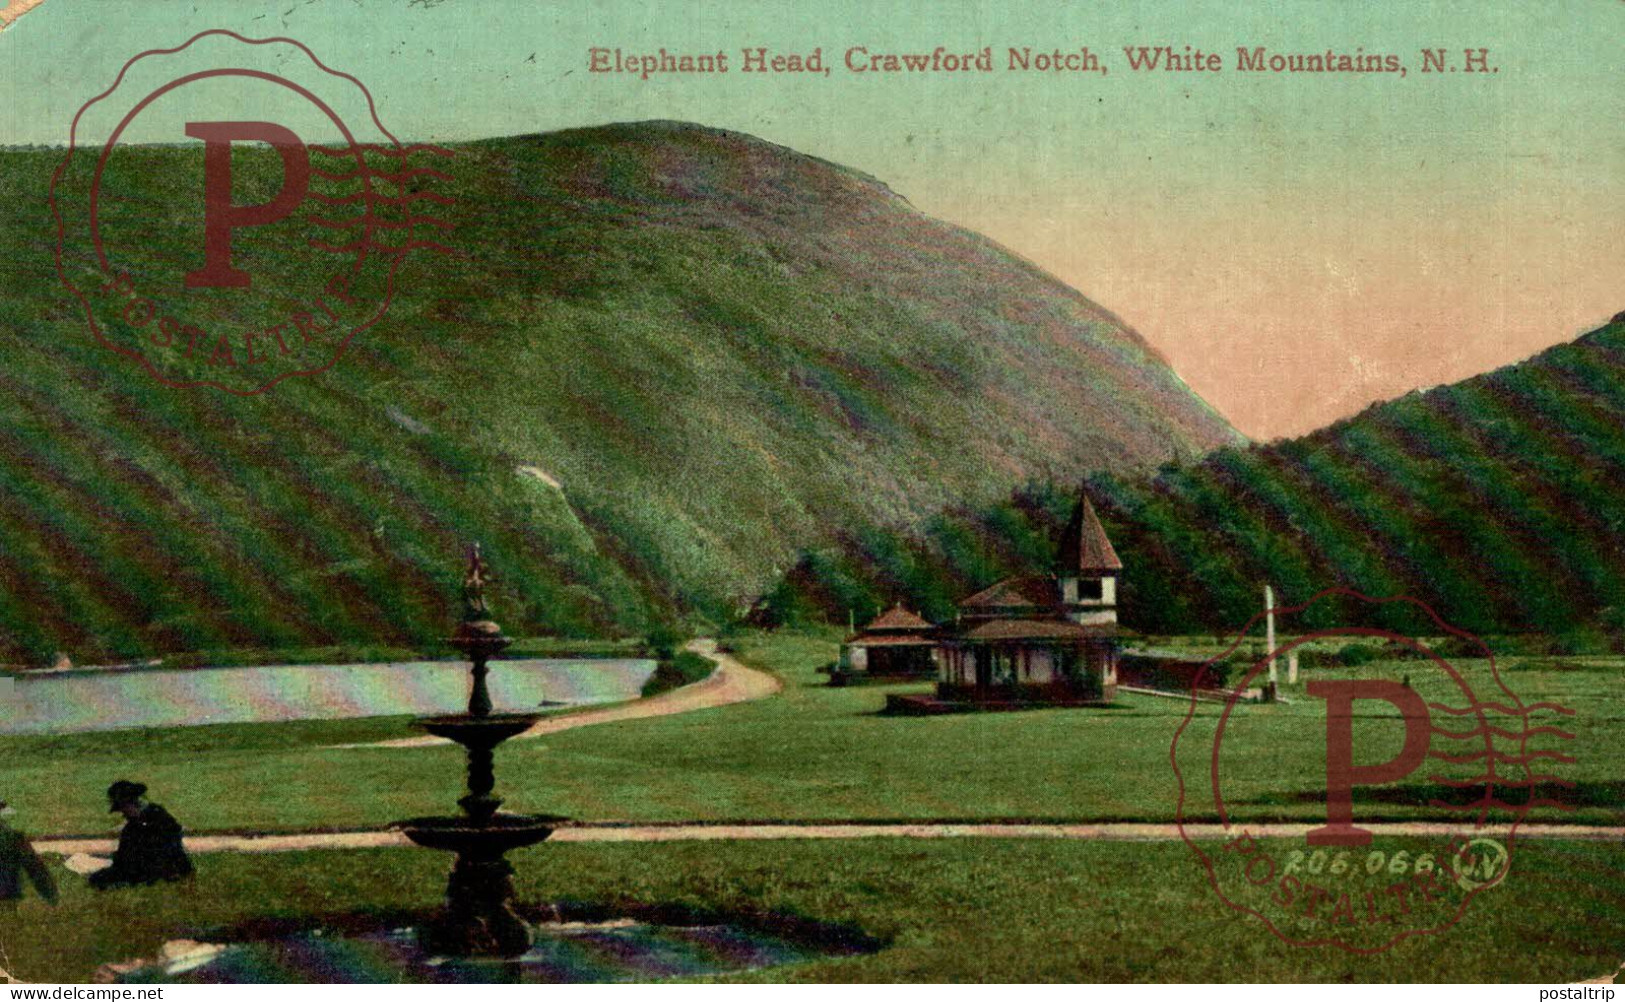 USA. ELEPHANT HEAD, CRAWFORD NOTCH, WHITE MOUNTAINS, N.H. - White Mountains